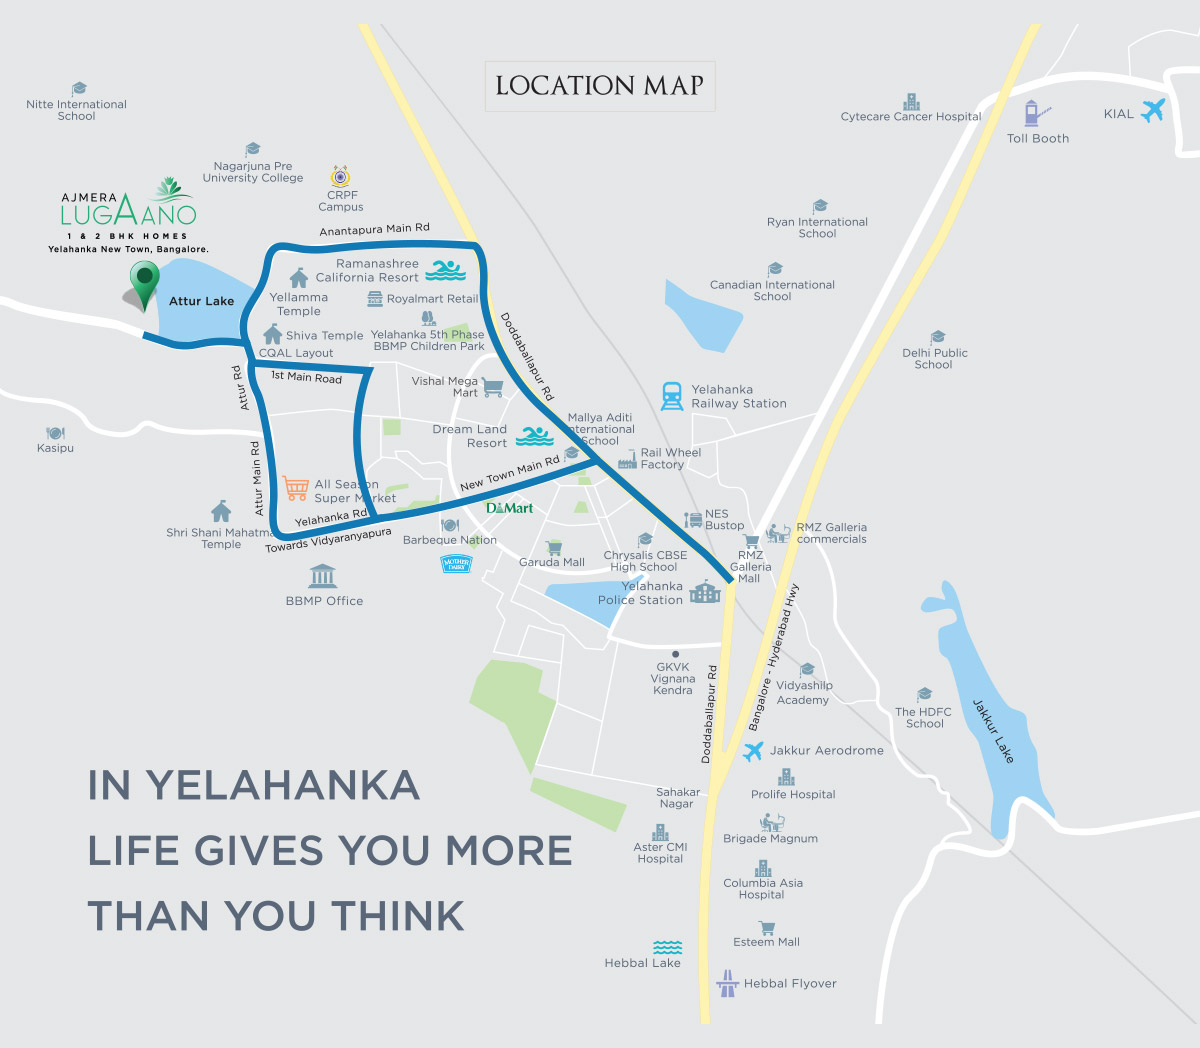 Ajmera Lugaano in Yelahanka - Map